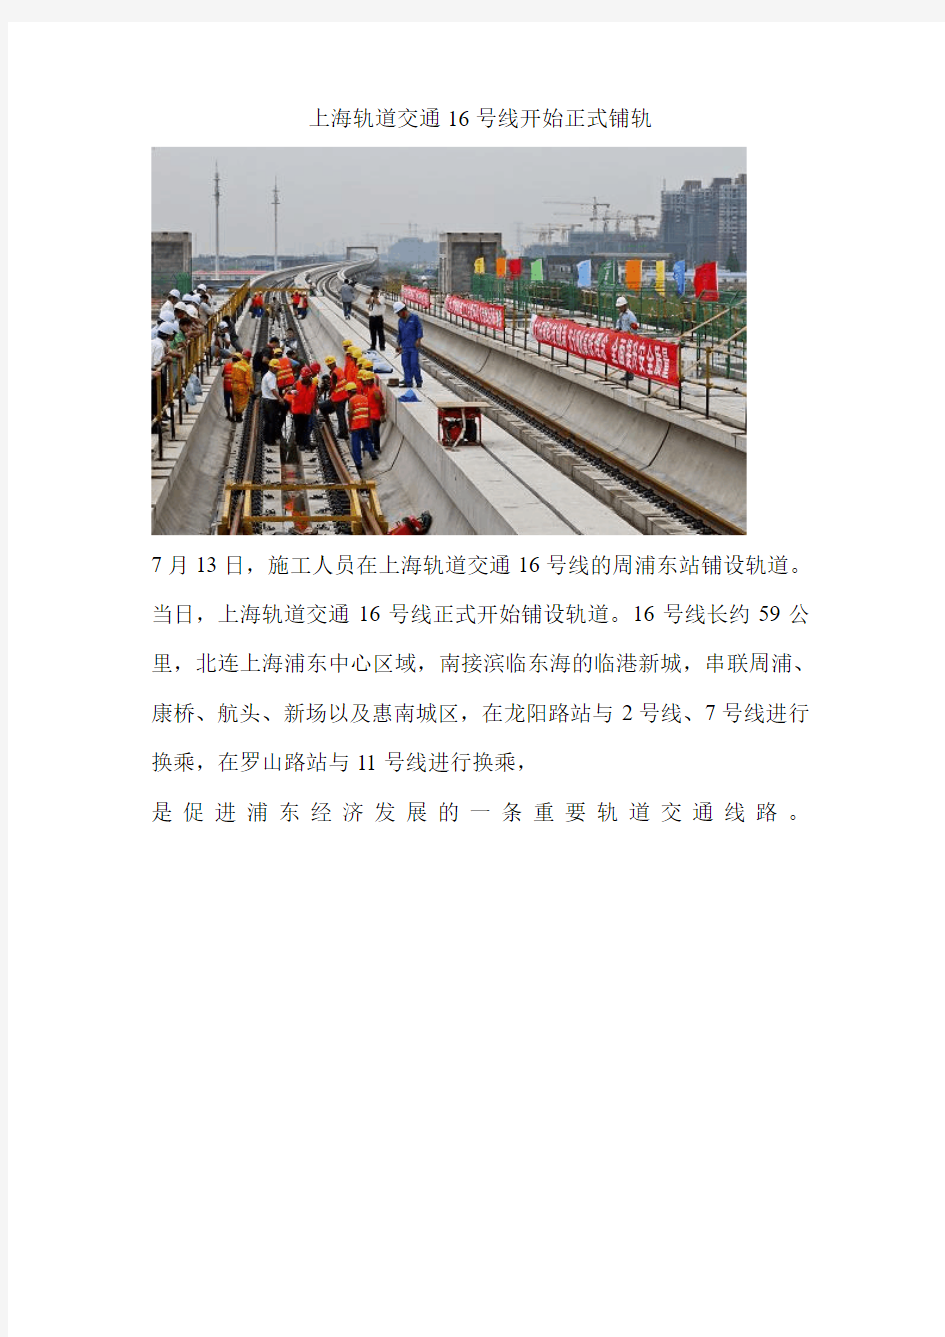 上海轨道交通16号线开始正式铺轨